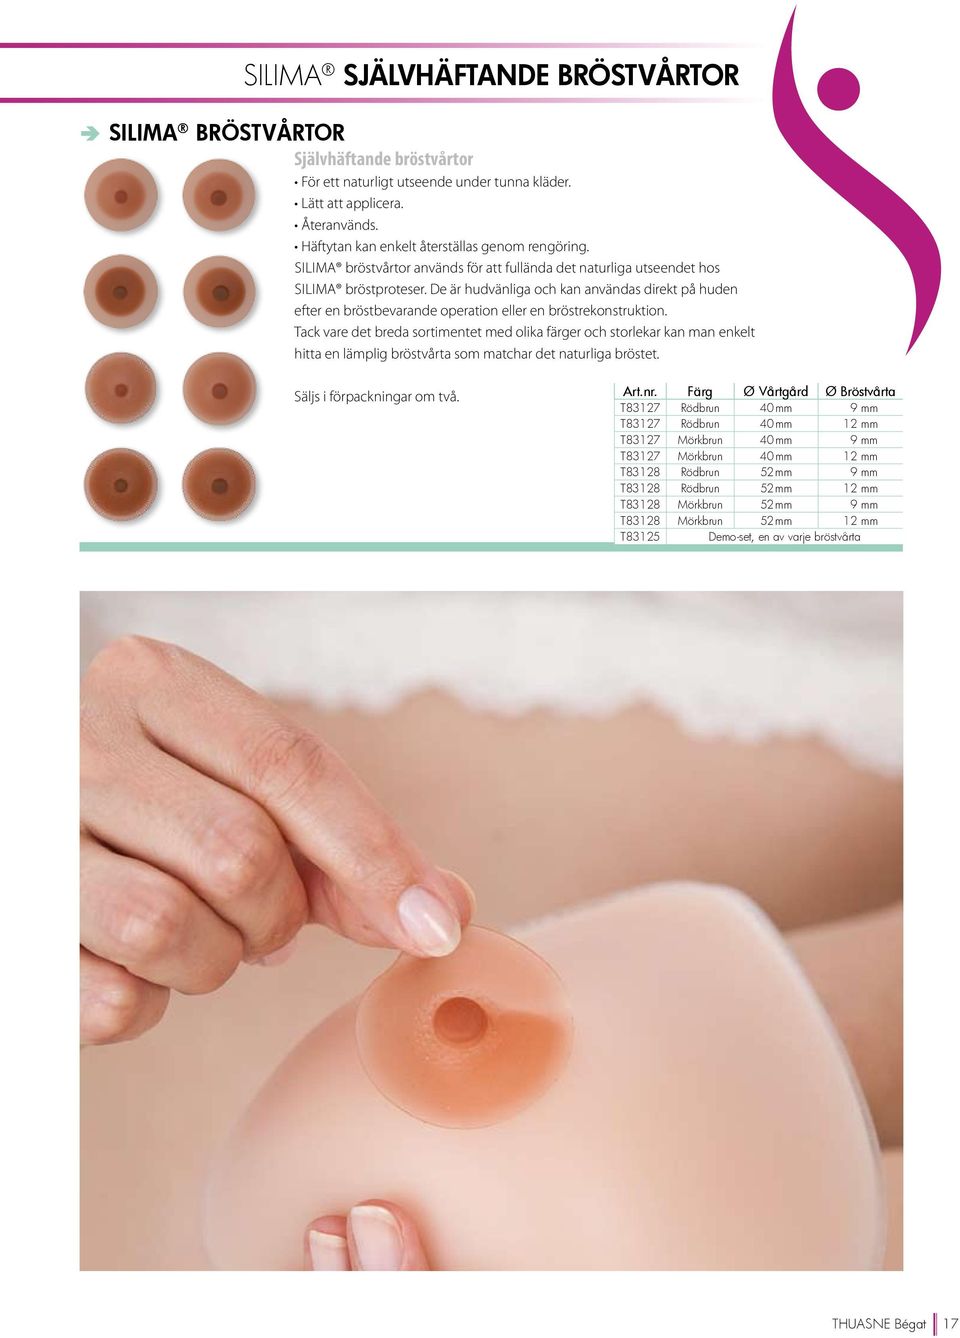 De är hudvänliga och kan användas direkt på huden efter en bröstbevarande operation eller en bröstrekonstruktion.